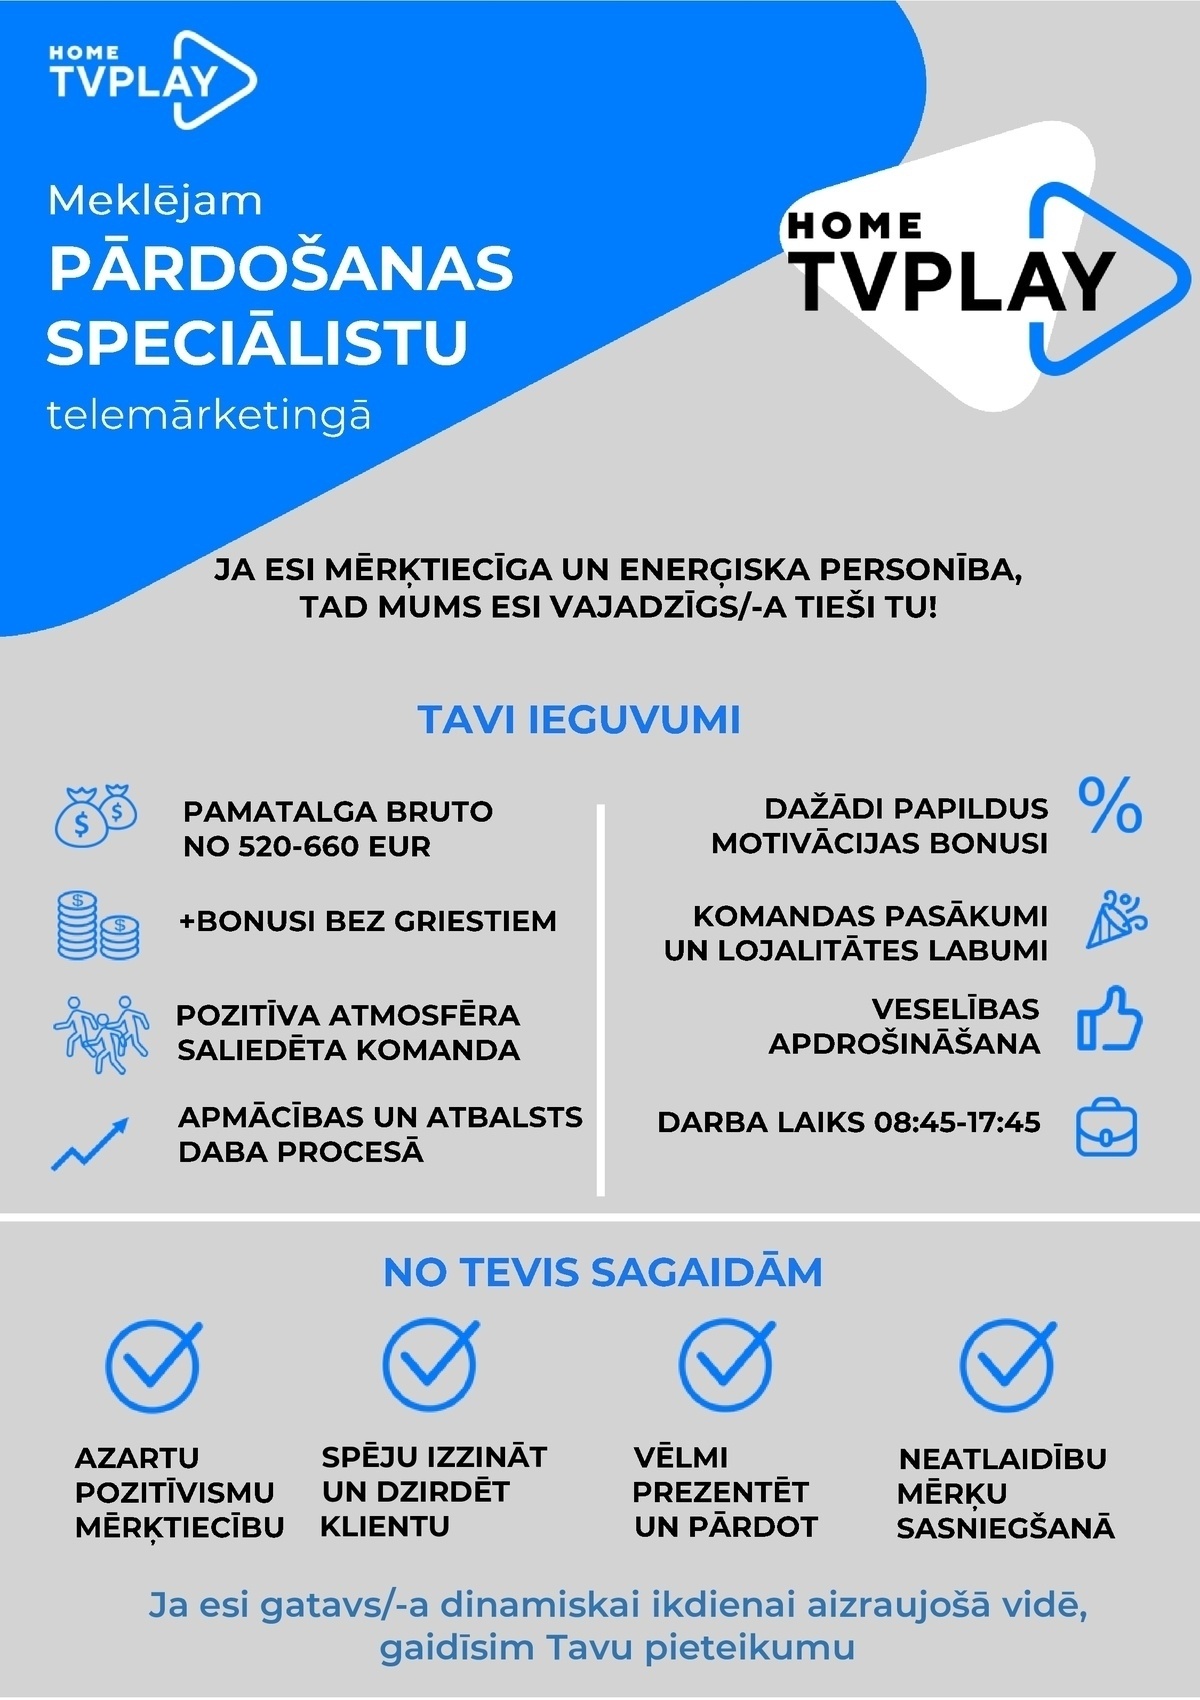 AS TV Play Baltics Latvijas filiāle Telemārketinga speciālists/-e